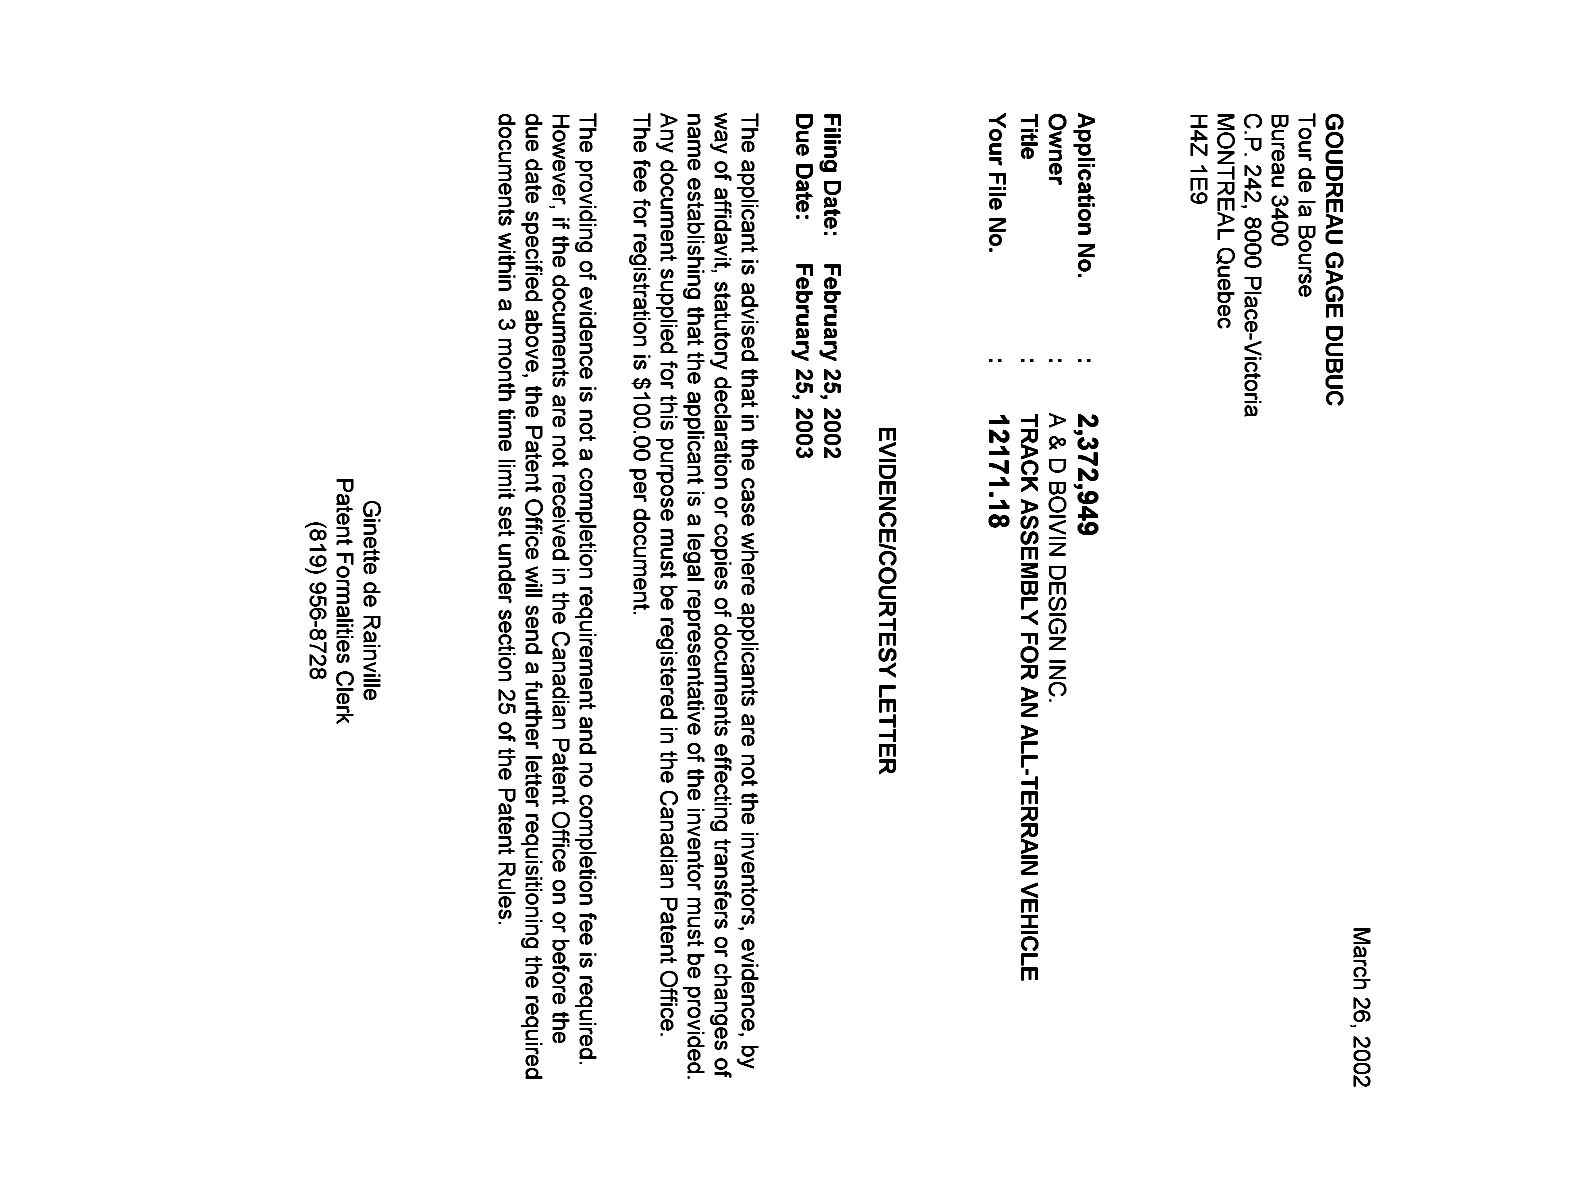 Document de brevet canadien 2372949. Correspondance 20020321. Image 1 de 1